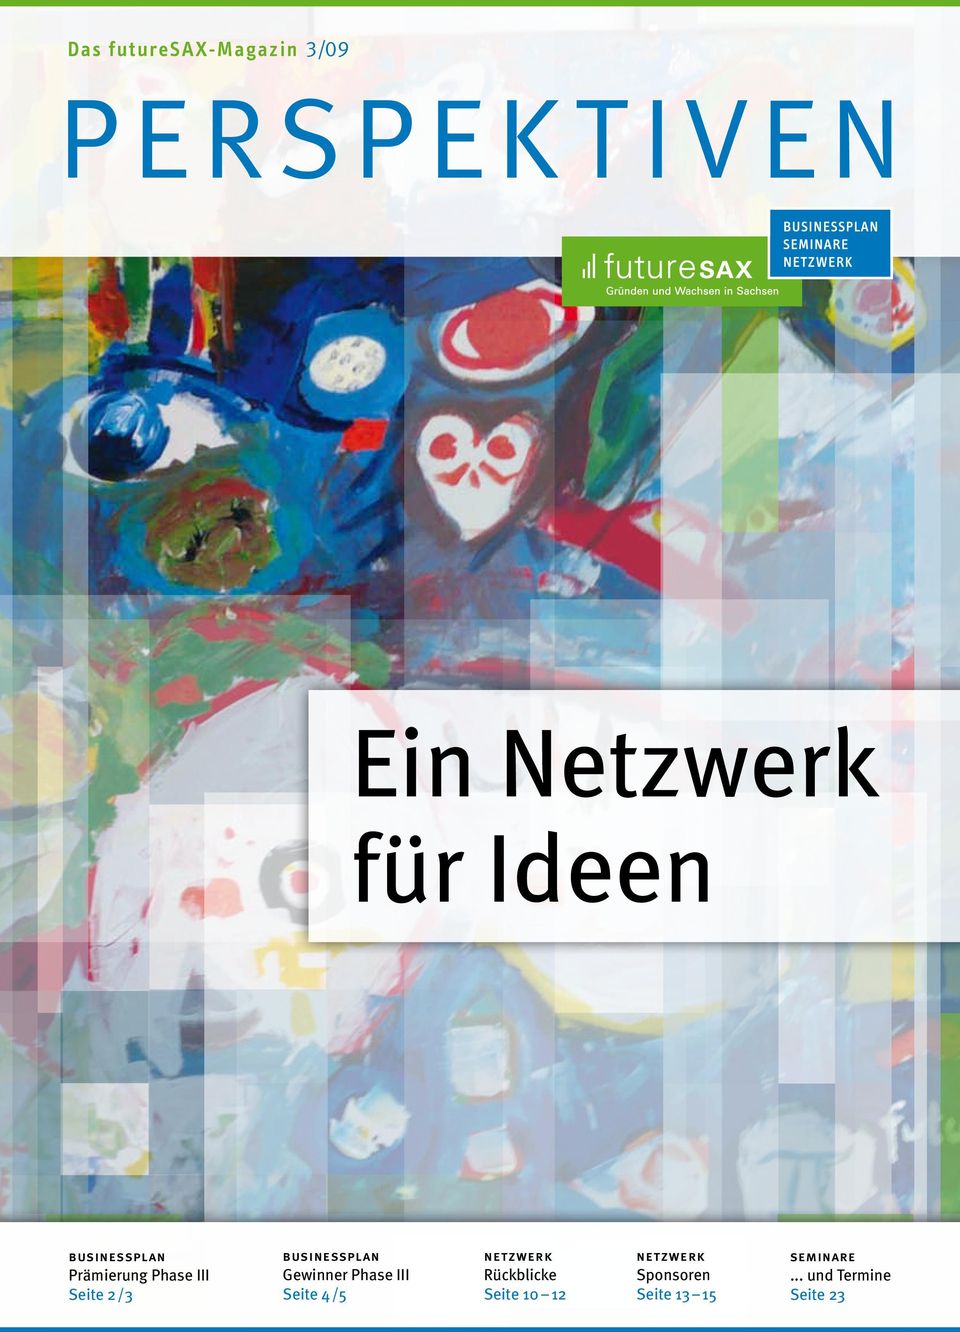 businessplan Gewinner Phase III Seite 4/5 netzwerk Rückblicke